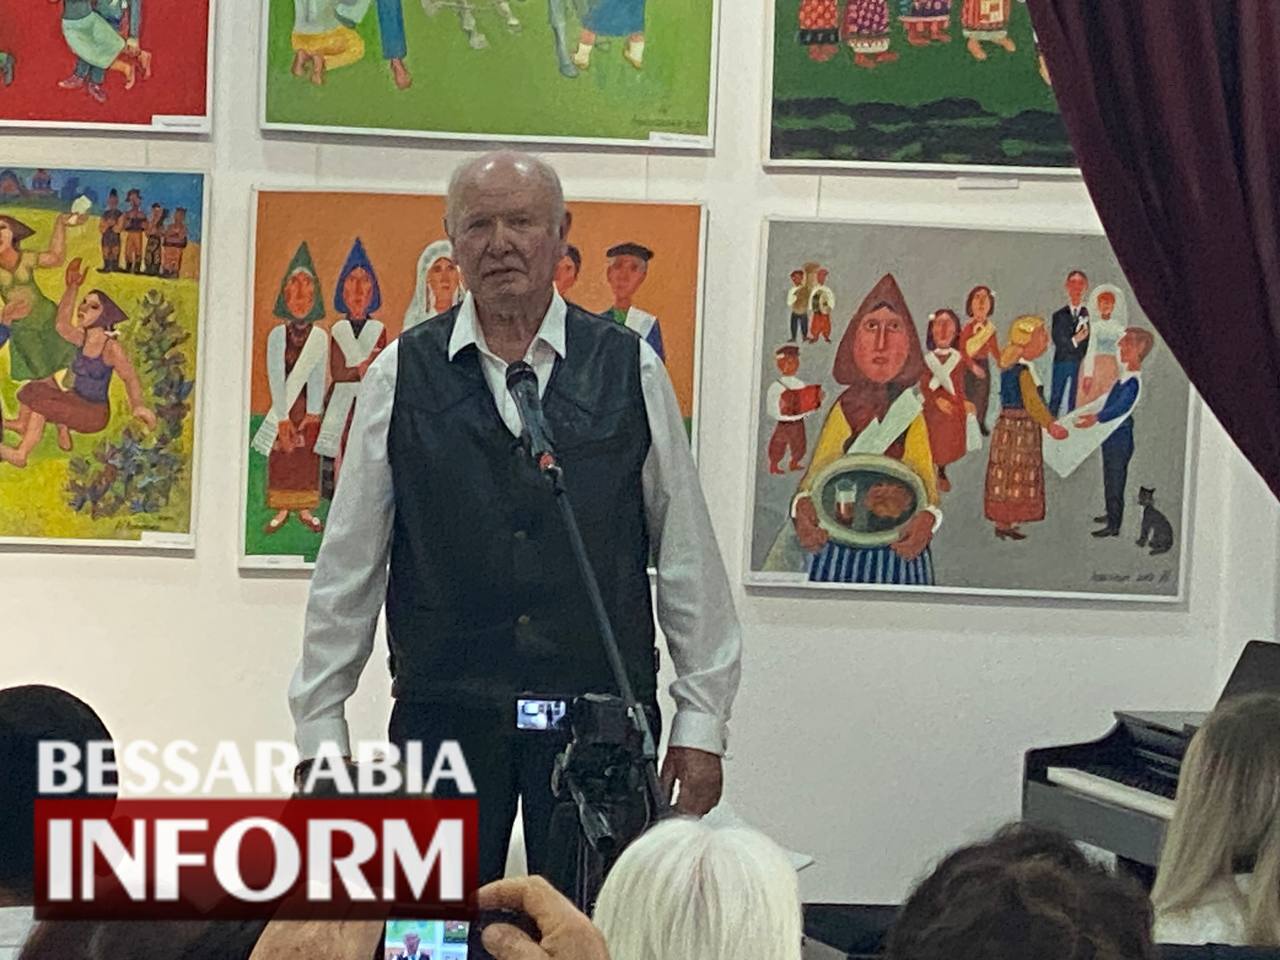 В Арциге прошли творческий вечер и открытие выставки известного бессарабского художника Владимира Афанасьева